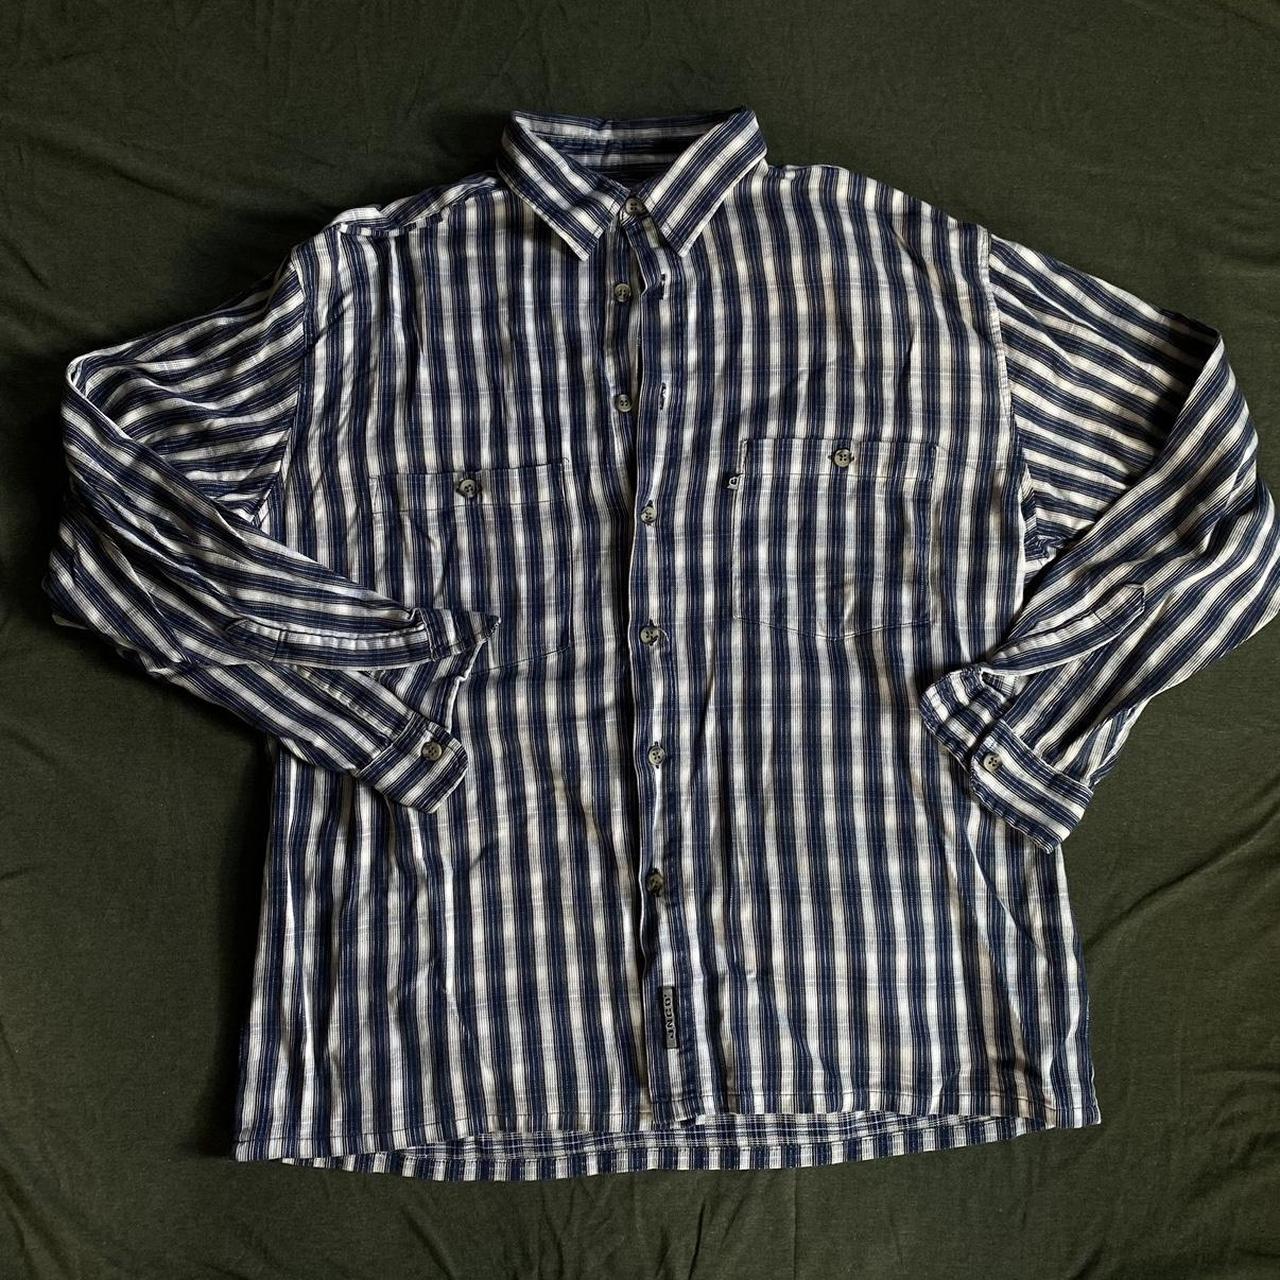 JNCO flannel size large - Depop